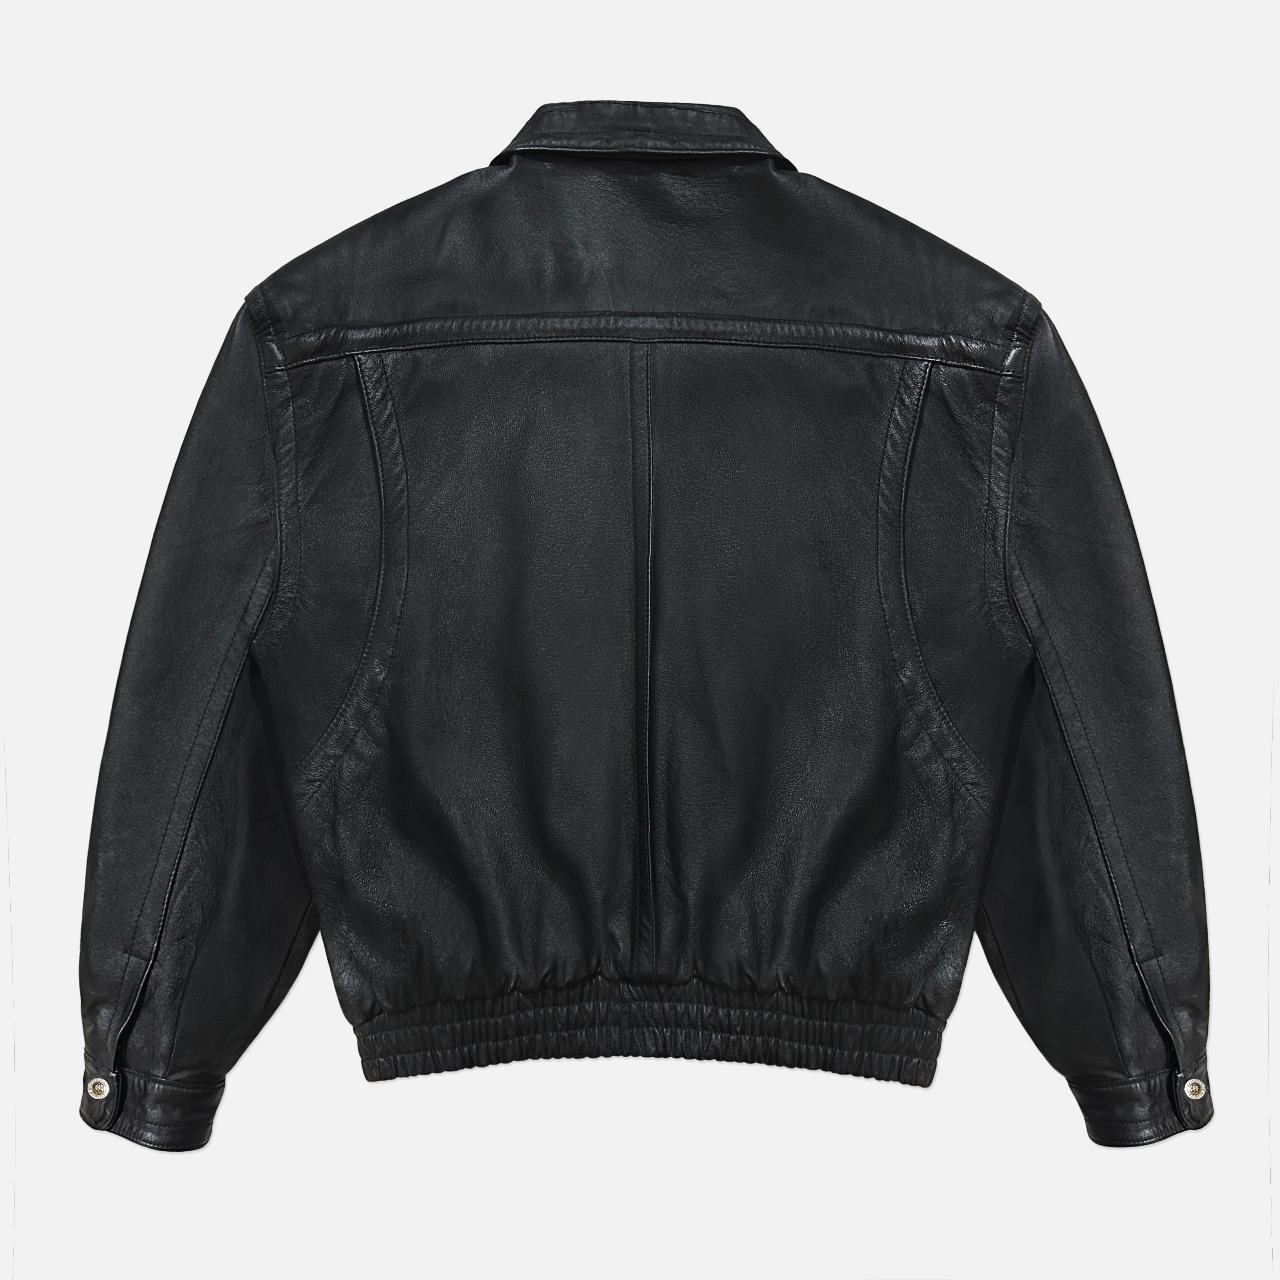 Vintage 90s Oversized Leather Bomber Jacket 🖤 | Good... - Depop